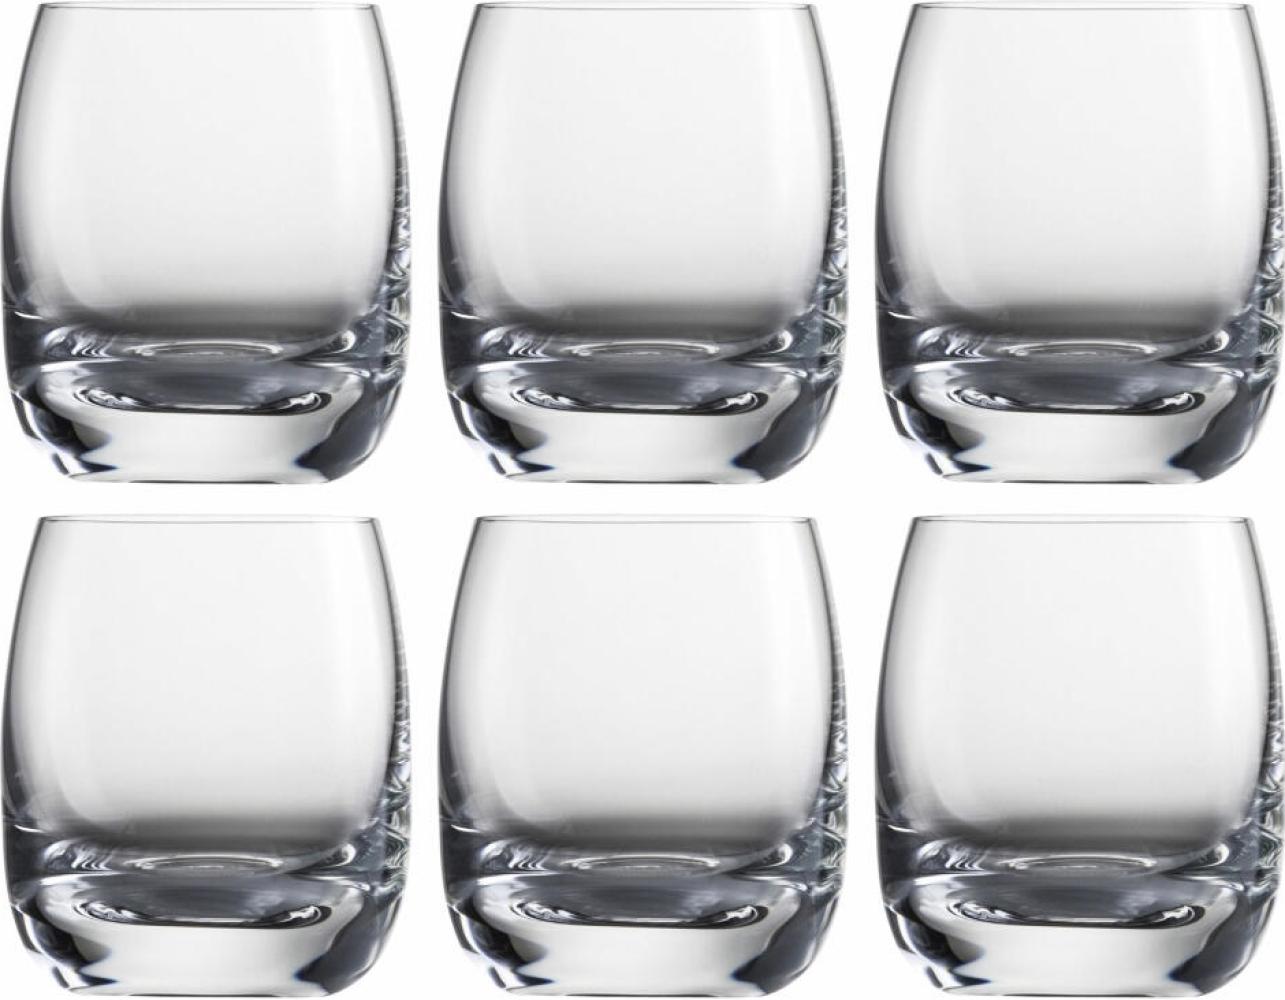 Eisch Schnapsglas 6er Set Tumblers, Schnapstumbler, Gläser, Kristallglas, 70 ml, 30310718 Bild 1